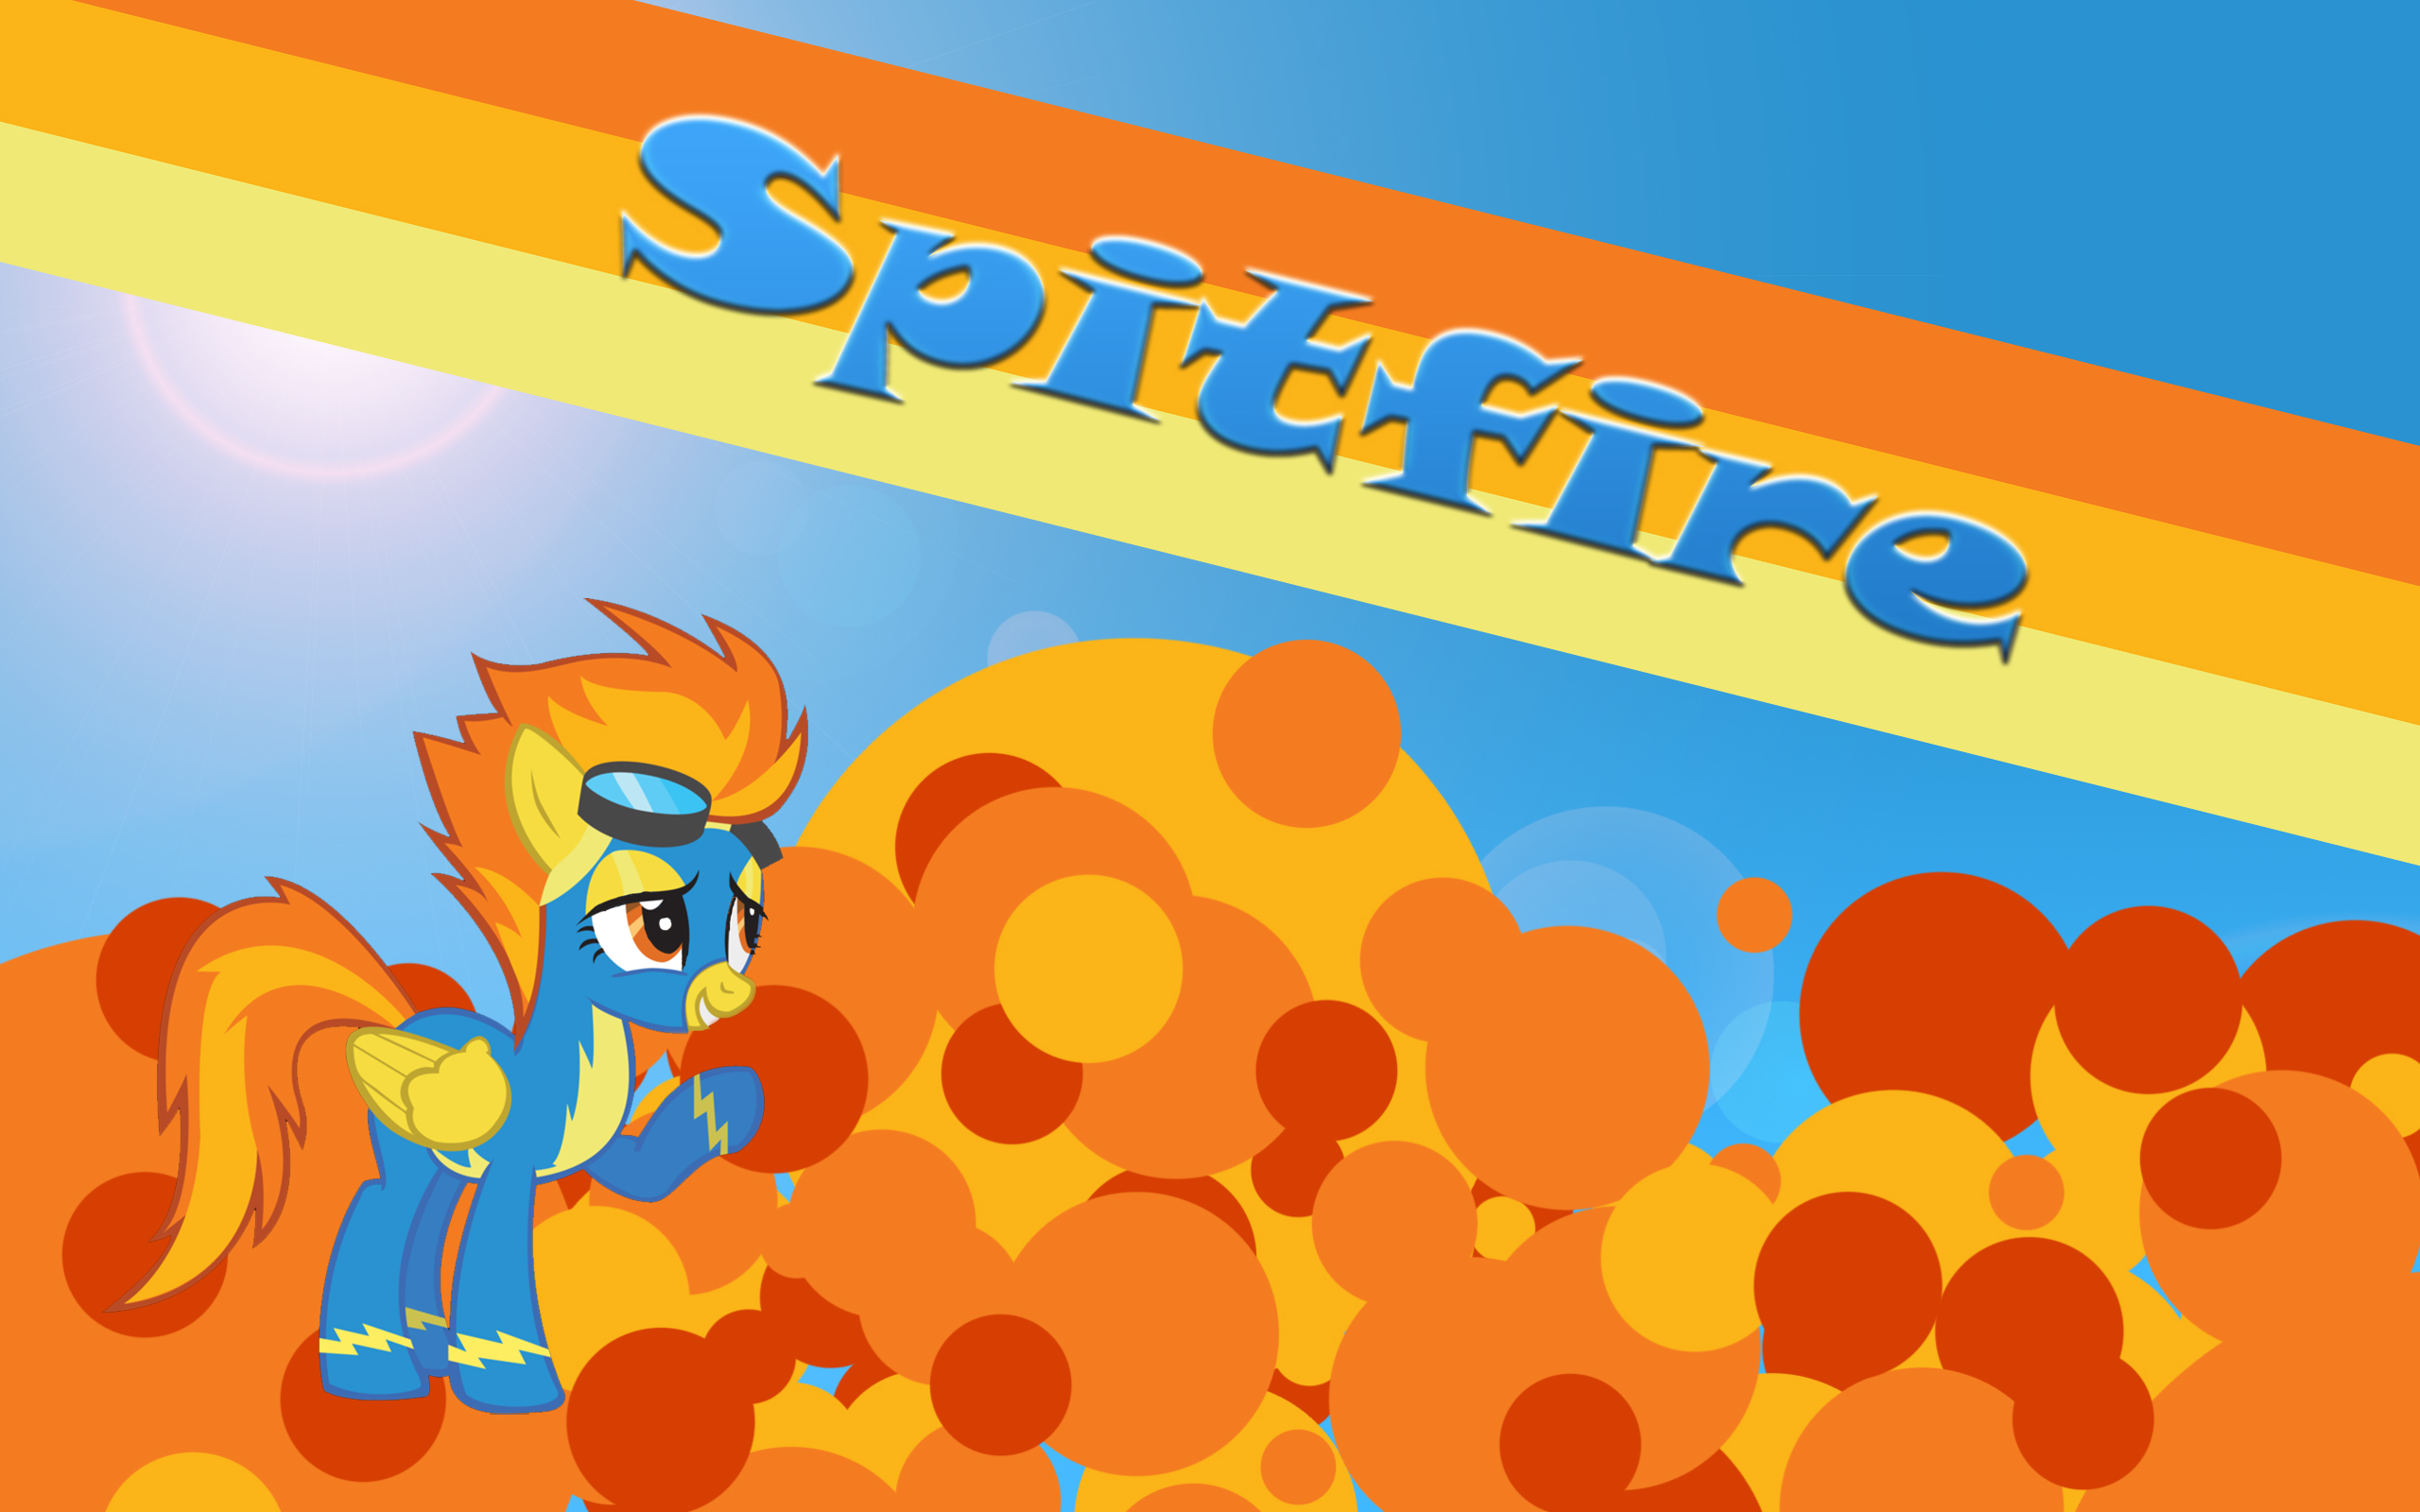 Spitfire Logo Wallpaper Image